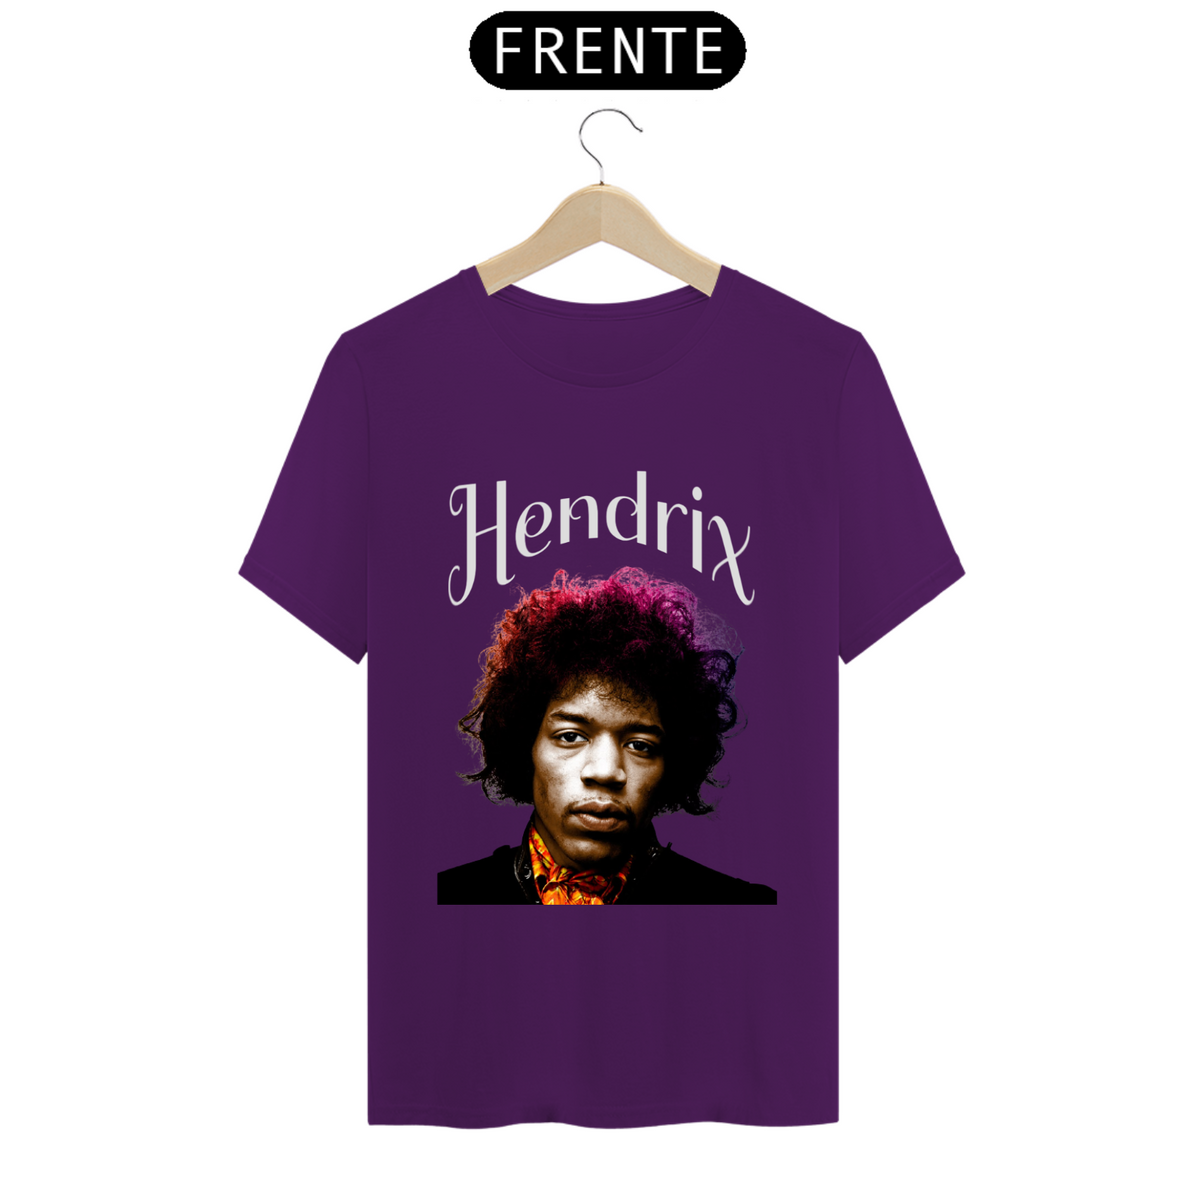 Nome do produto: Hendrix